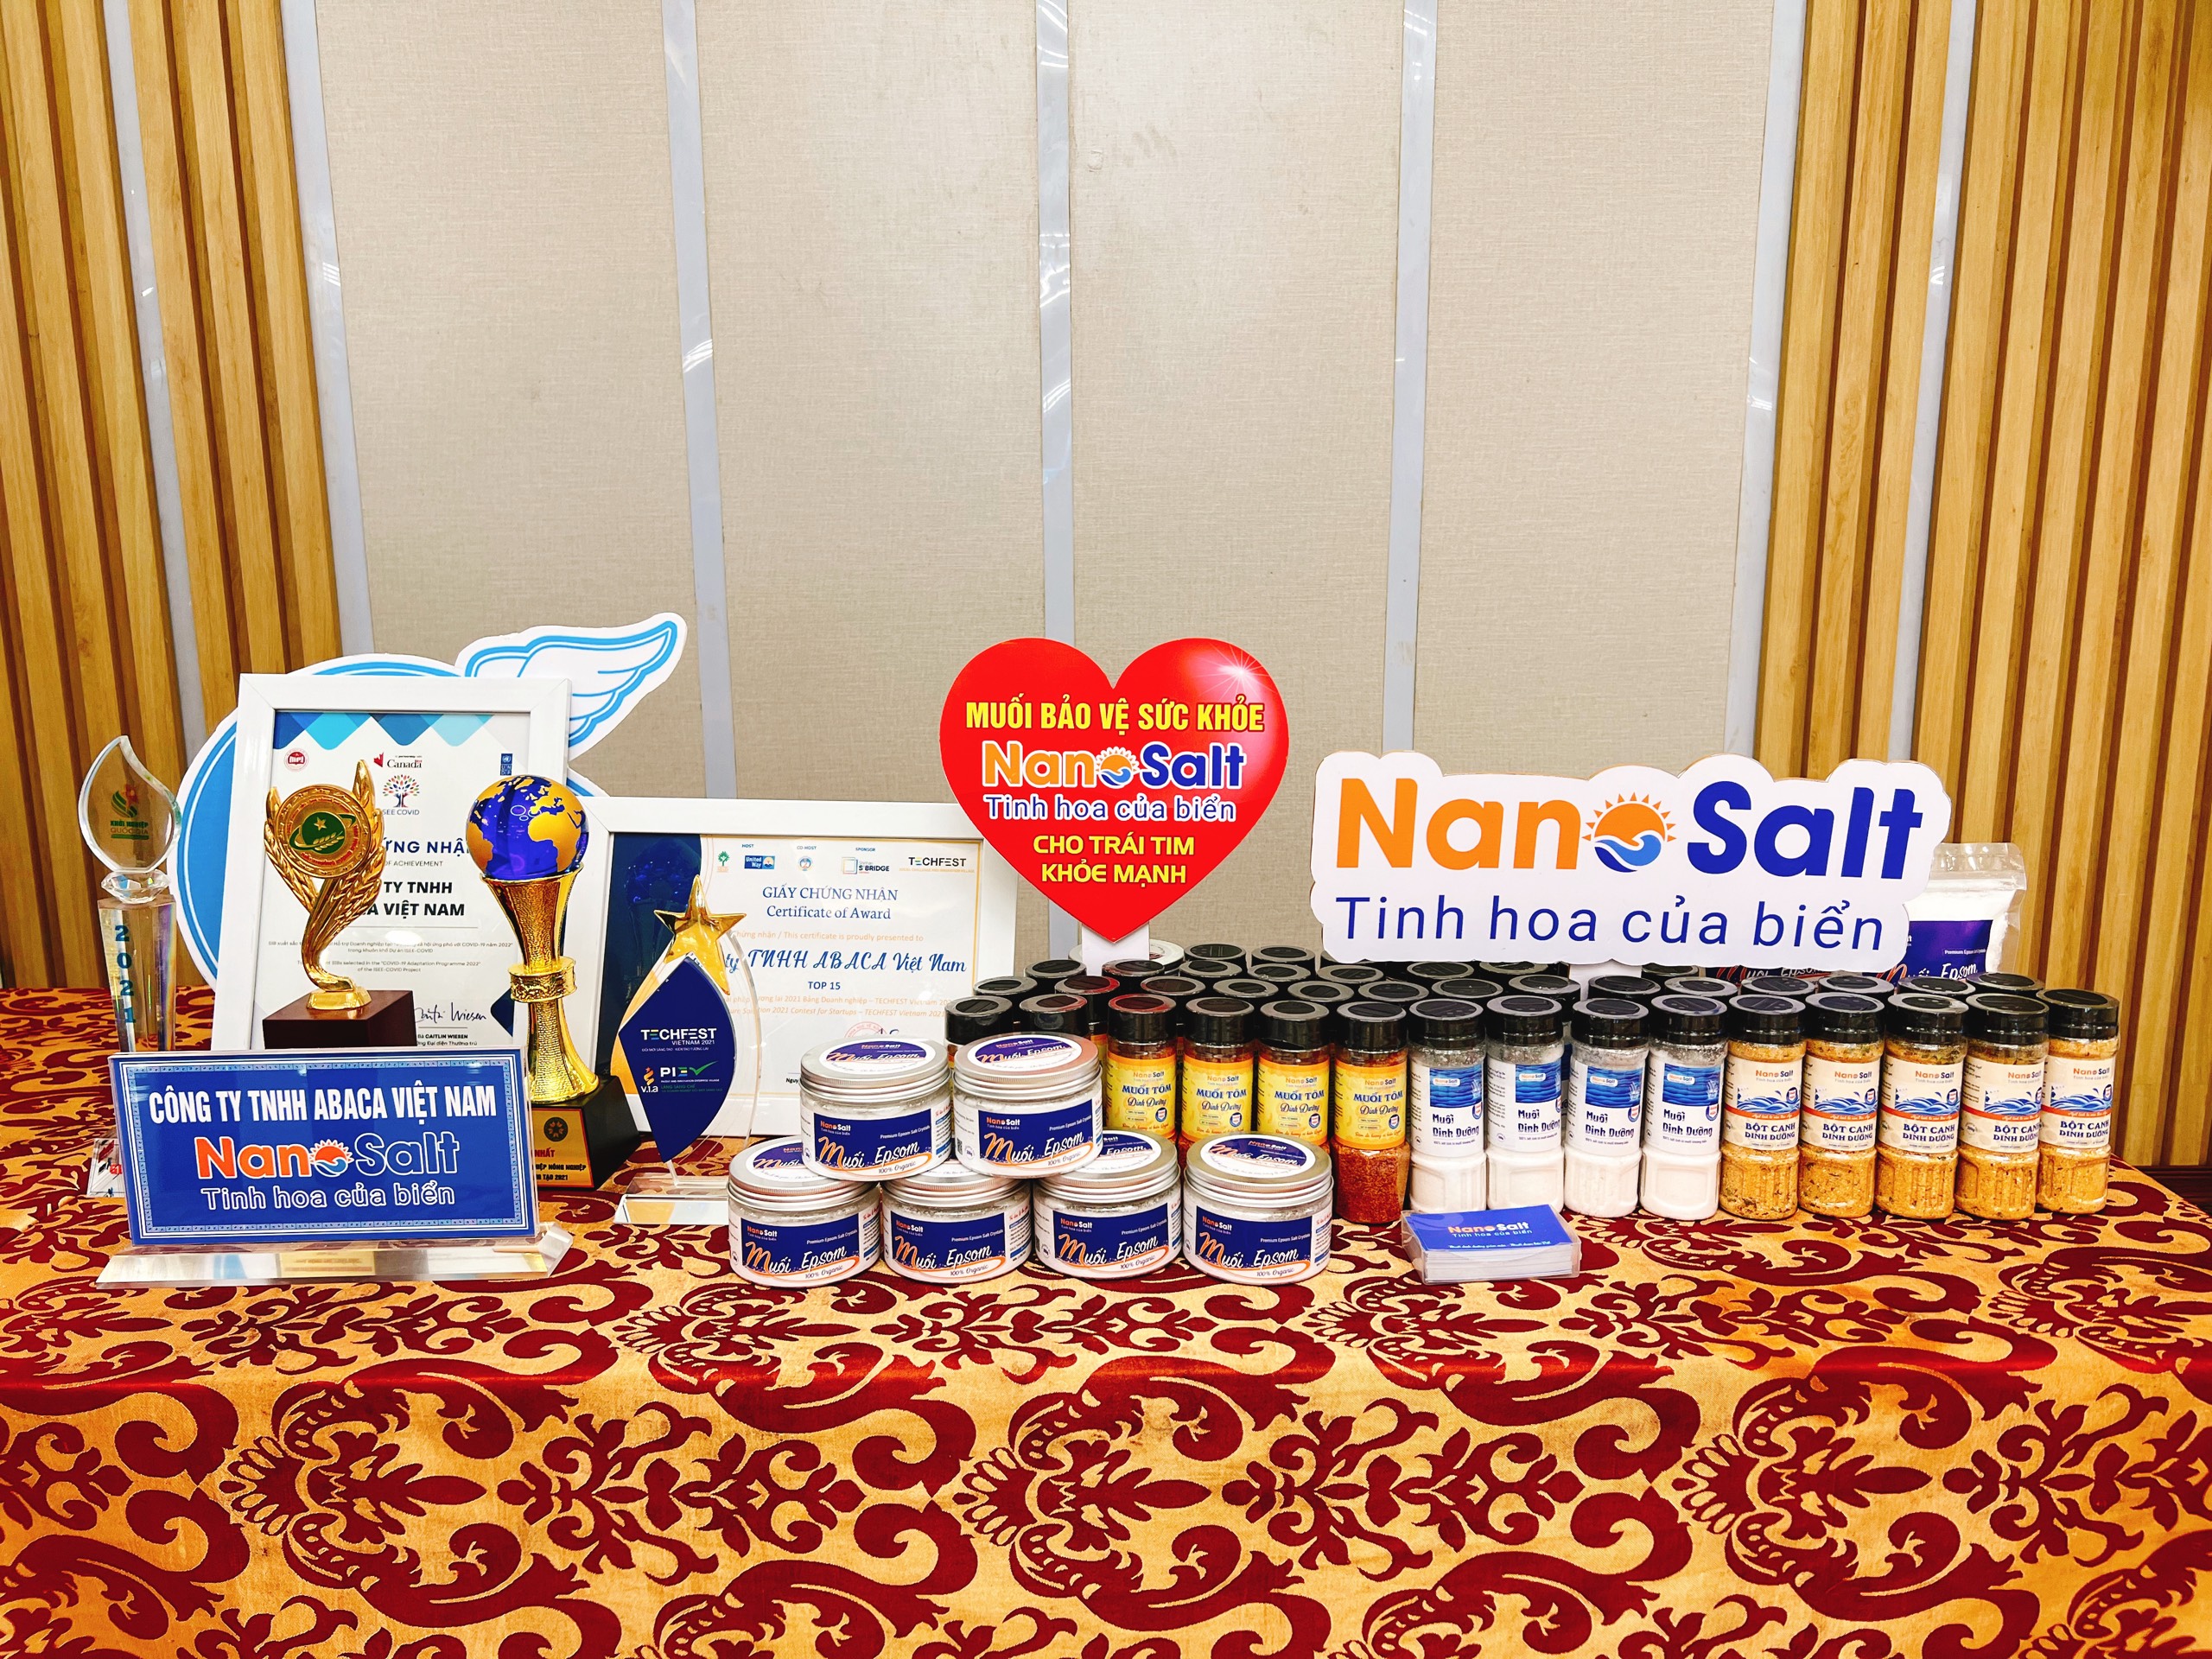 Một số sản phẩm của NanoSalt